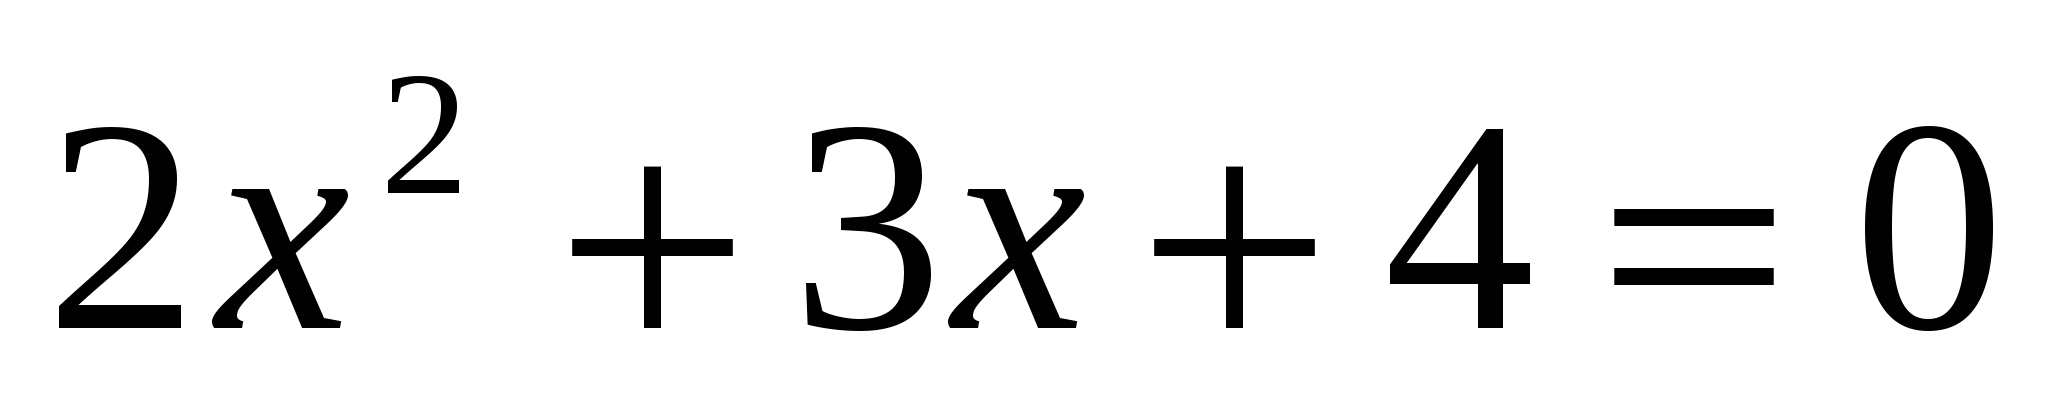 Тест по теме «Квадратные уравнения» 8 класс (20 мин)